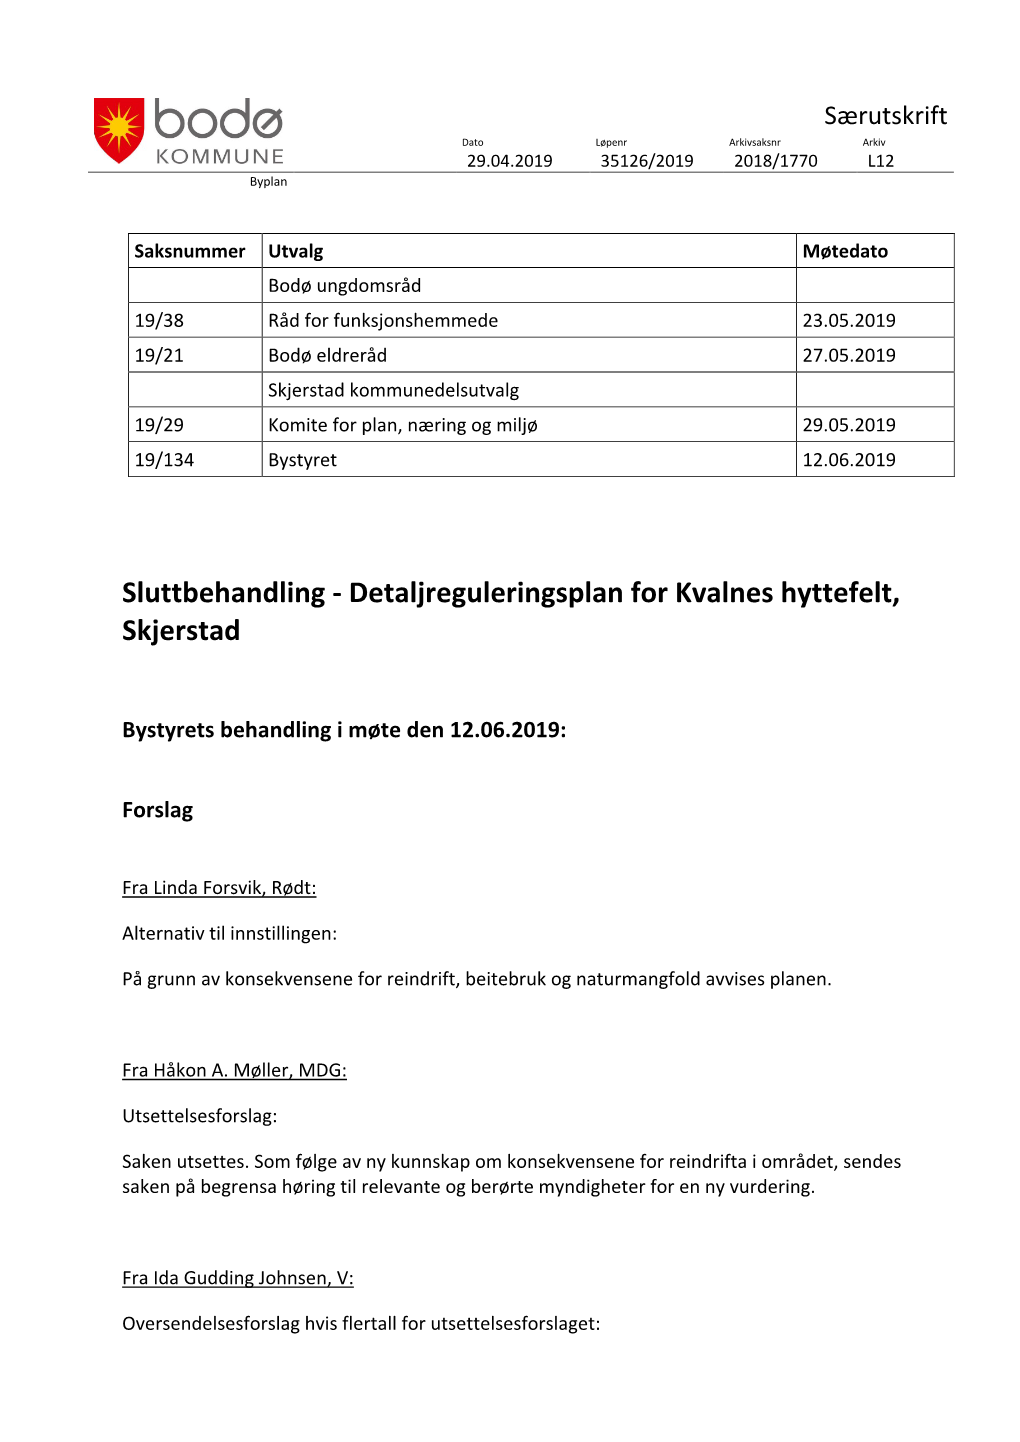 Detaljreguleringsplan for Kvalnes Hyttefelt, Skjerstad